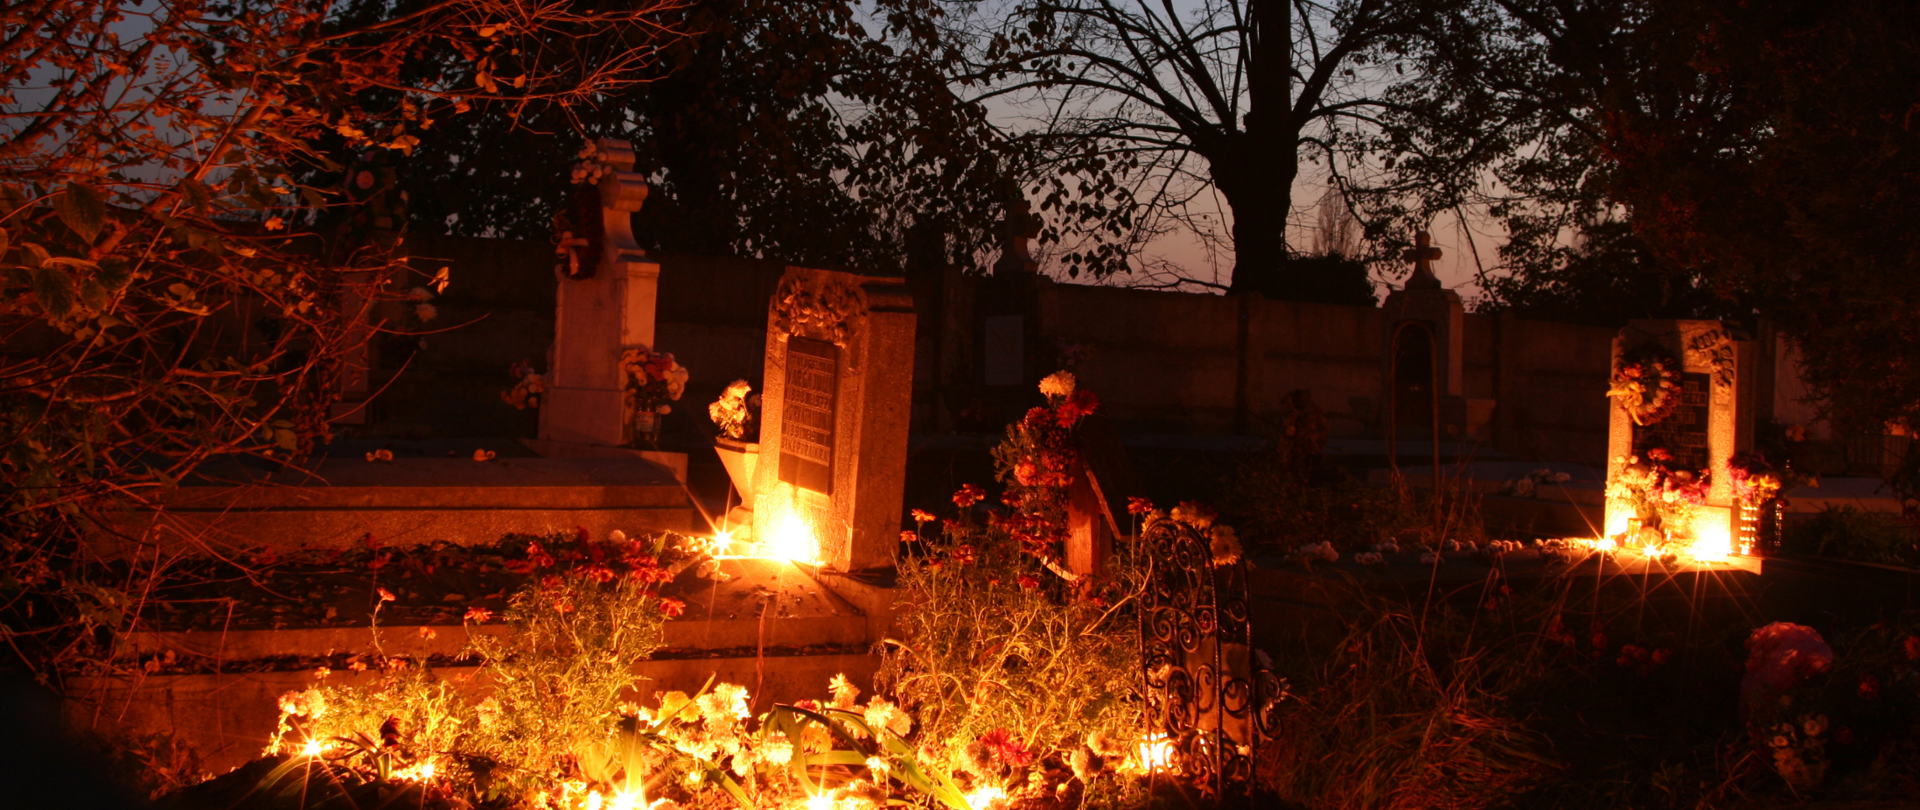 Nocne zdjęcie grobów na cmentarzu, na których palą się znicze.